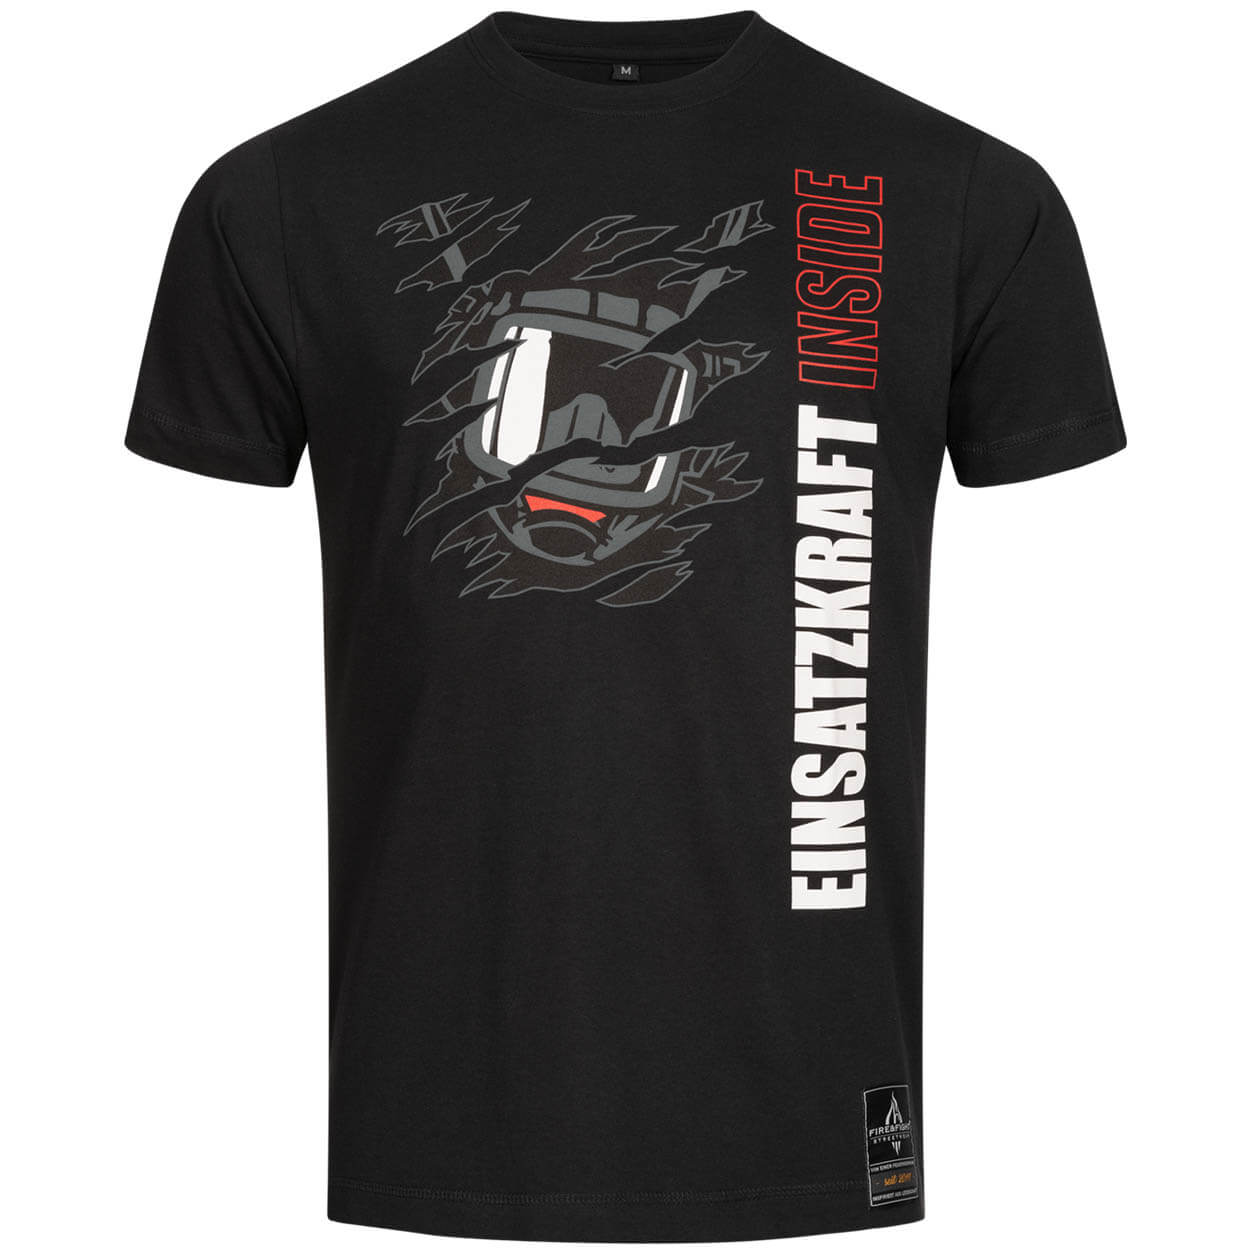 Einsatzkraft® INSIDE - Feuerwehr Männer T-Shirt schwarz